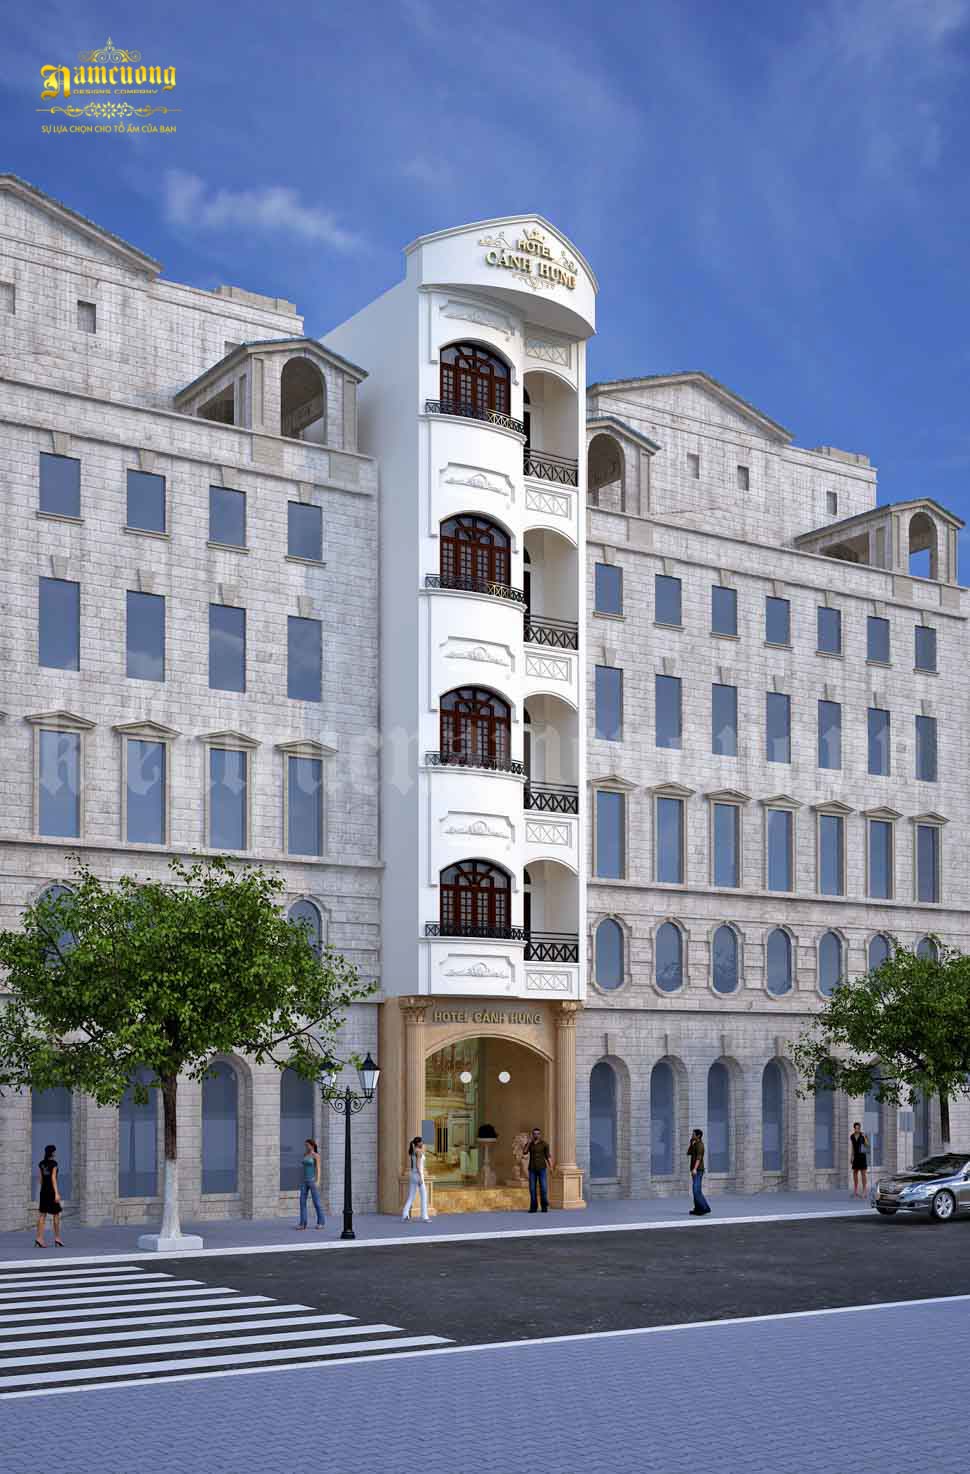 Hotel Cảnh Hưng là công trình khách sạn có địa điểm tại Hải Phòng được thiết kế theo phong cách tân cổ điển hút mắt người nhìn.